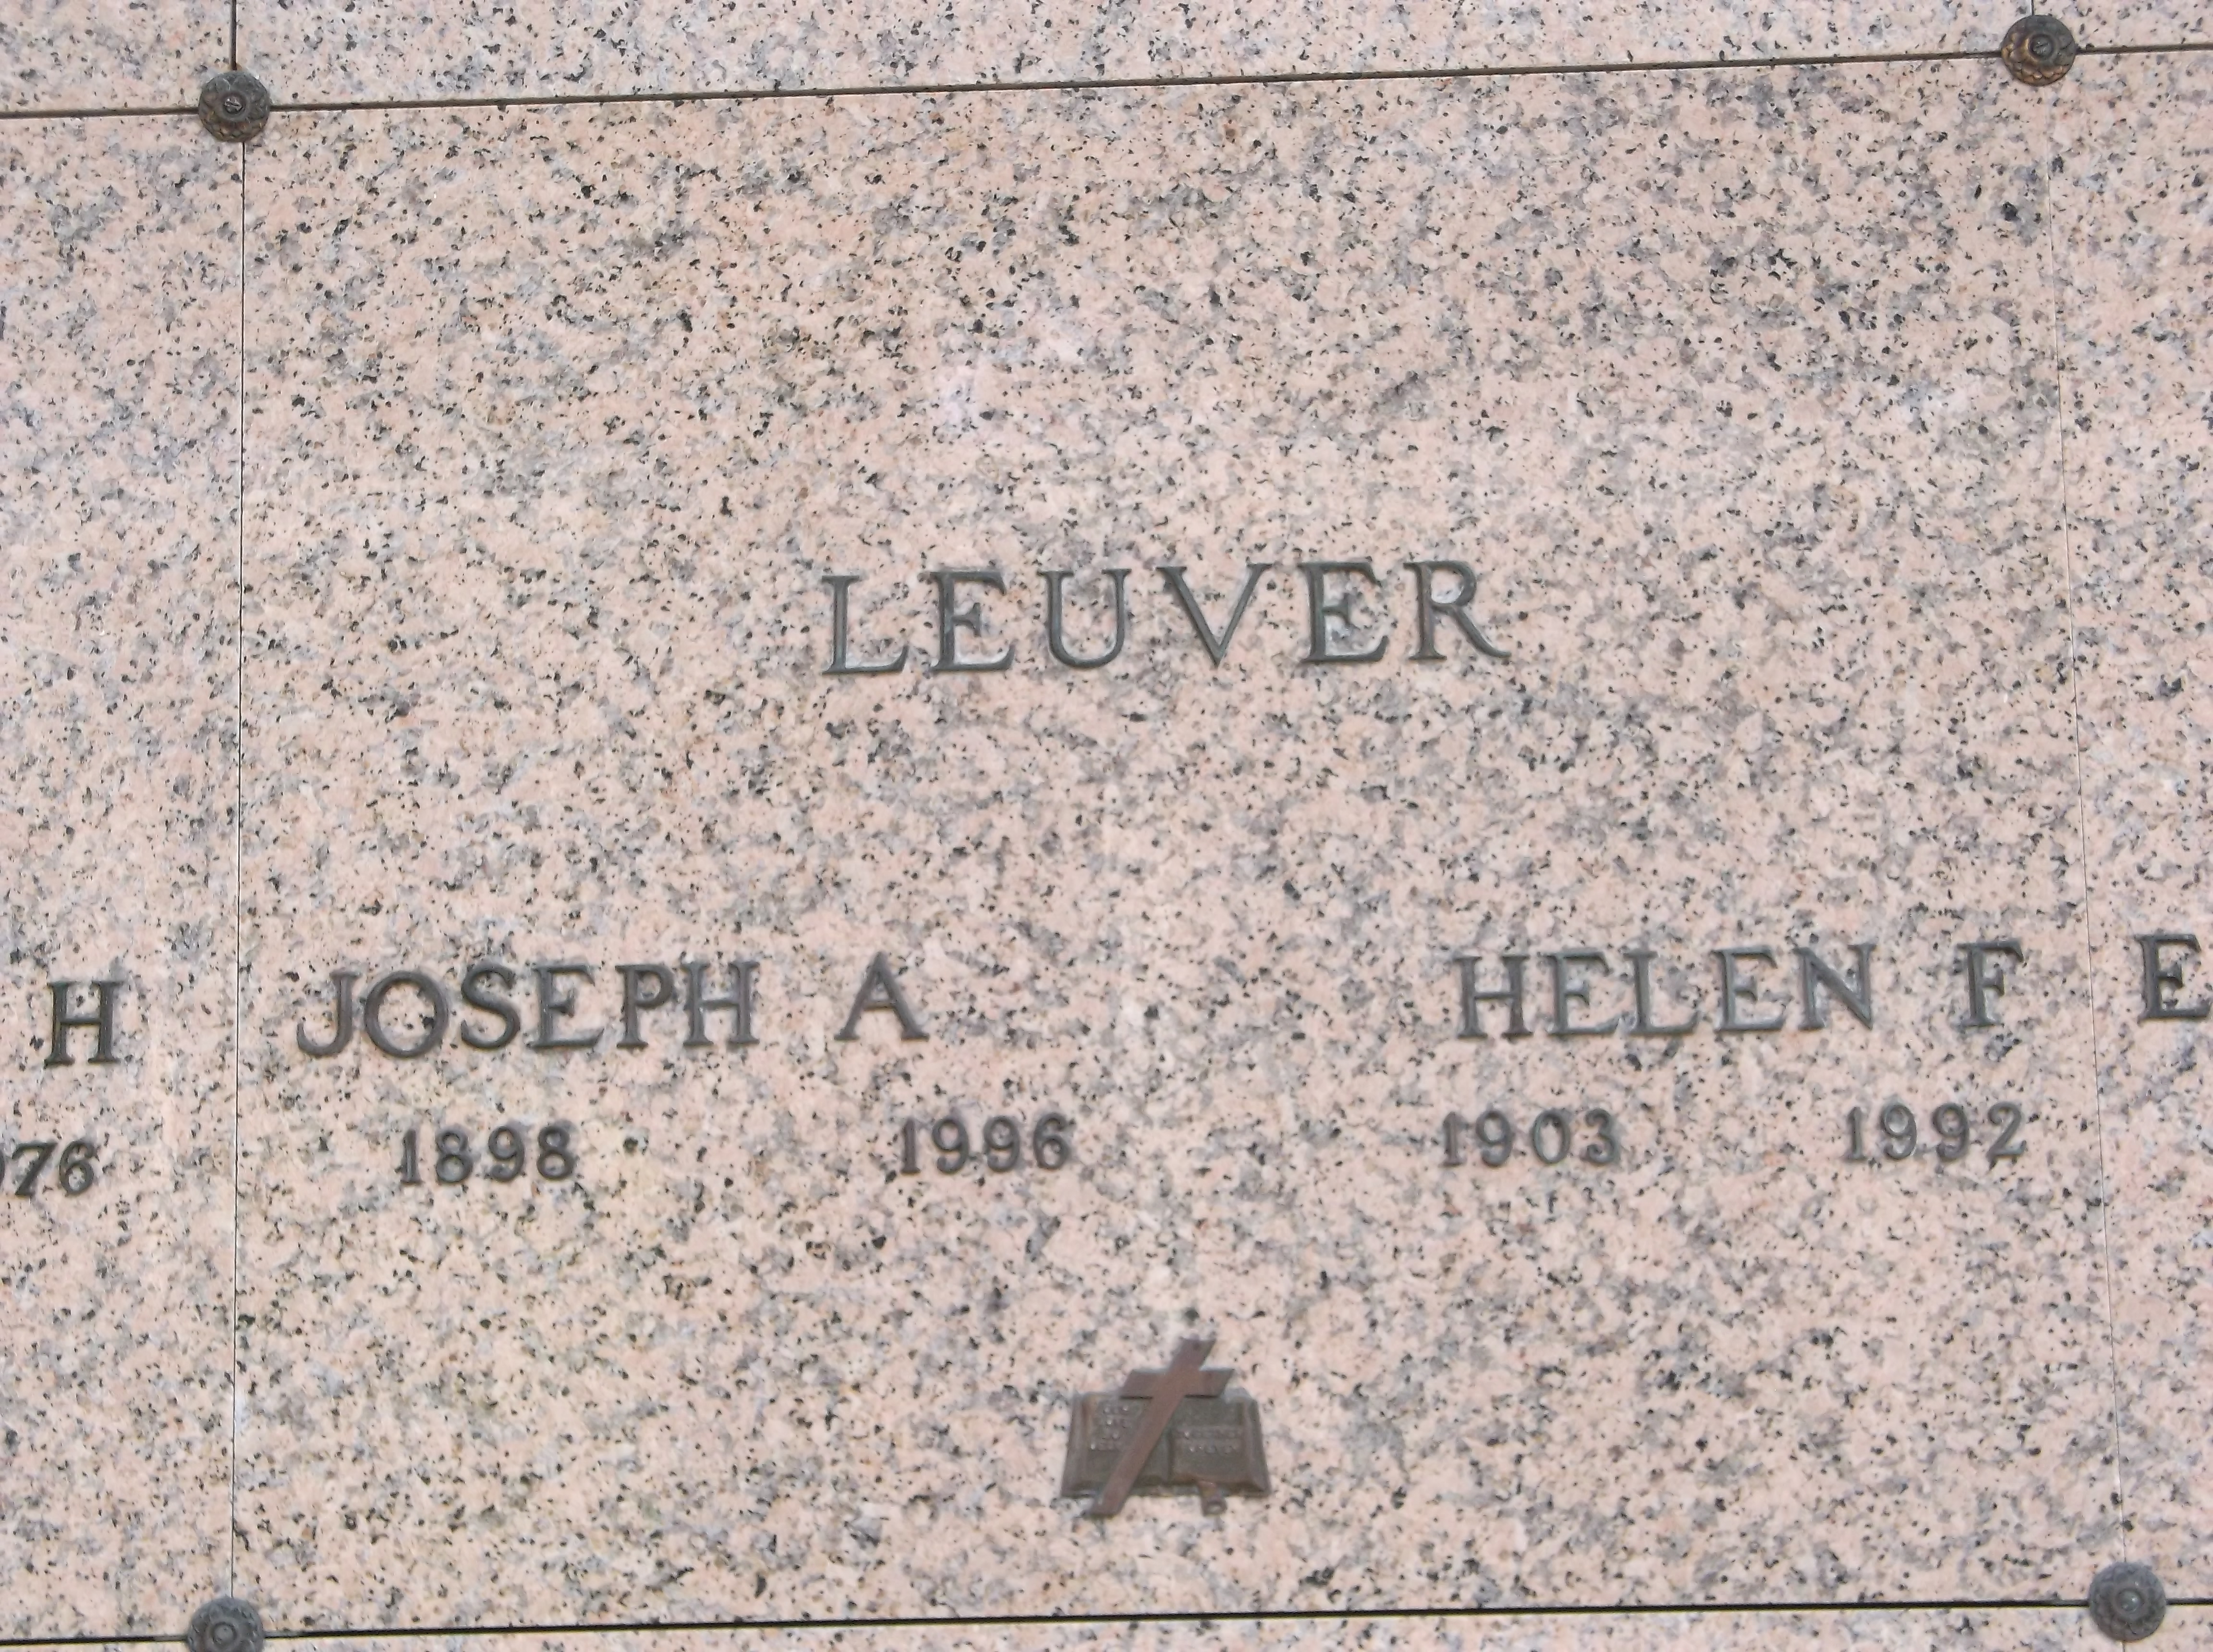 Joseph A Leuver